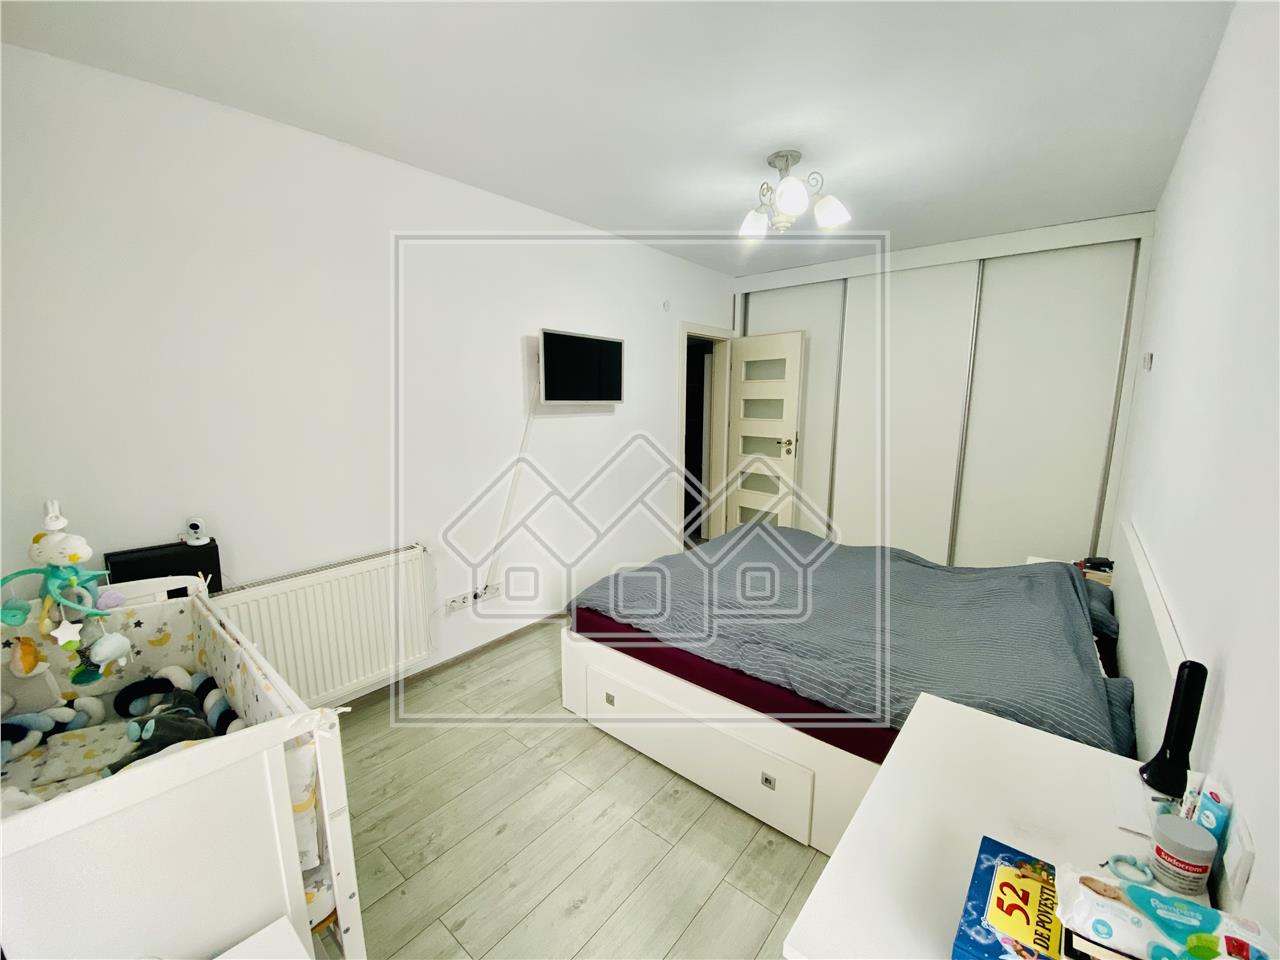 Wohnung zum Verkauf in Sibiu - 2 Zimmer und 2 Balkone - C. Cisnadiei